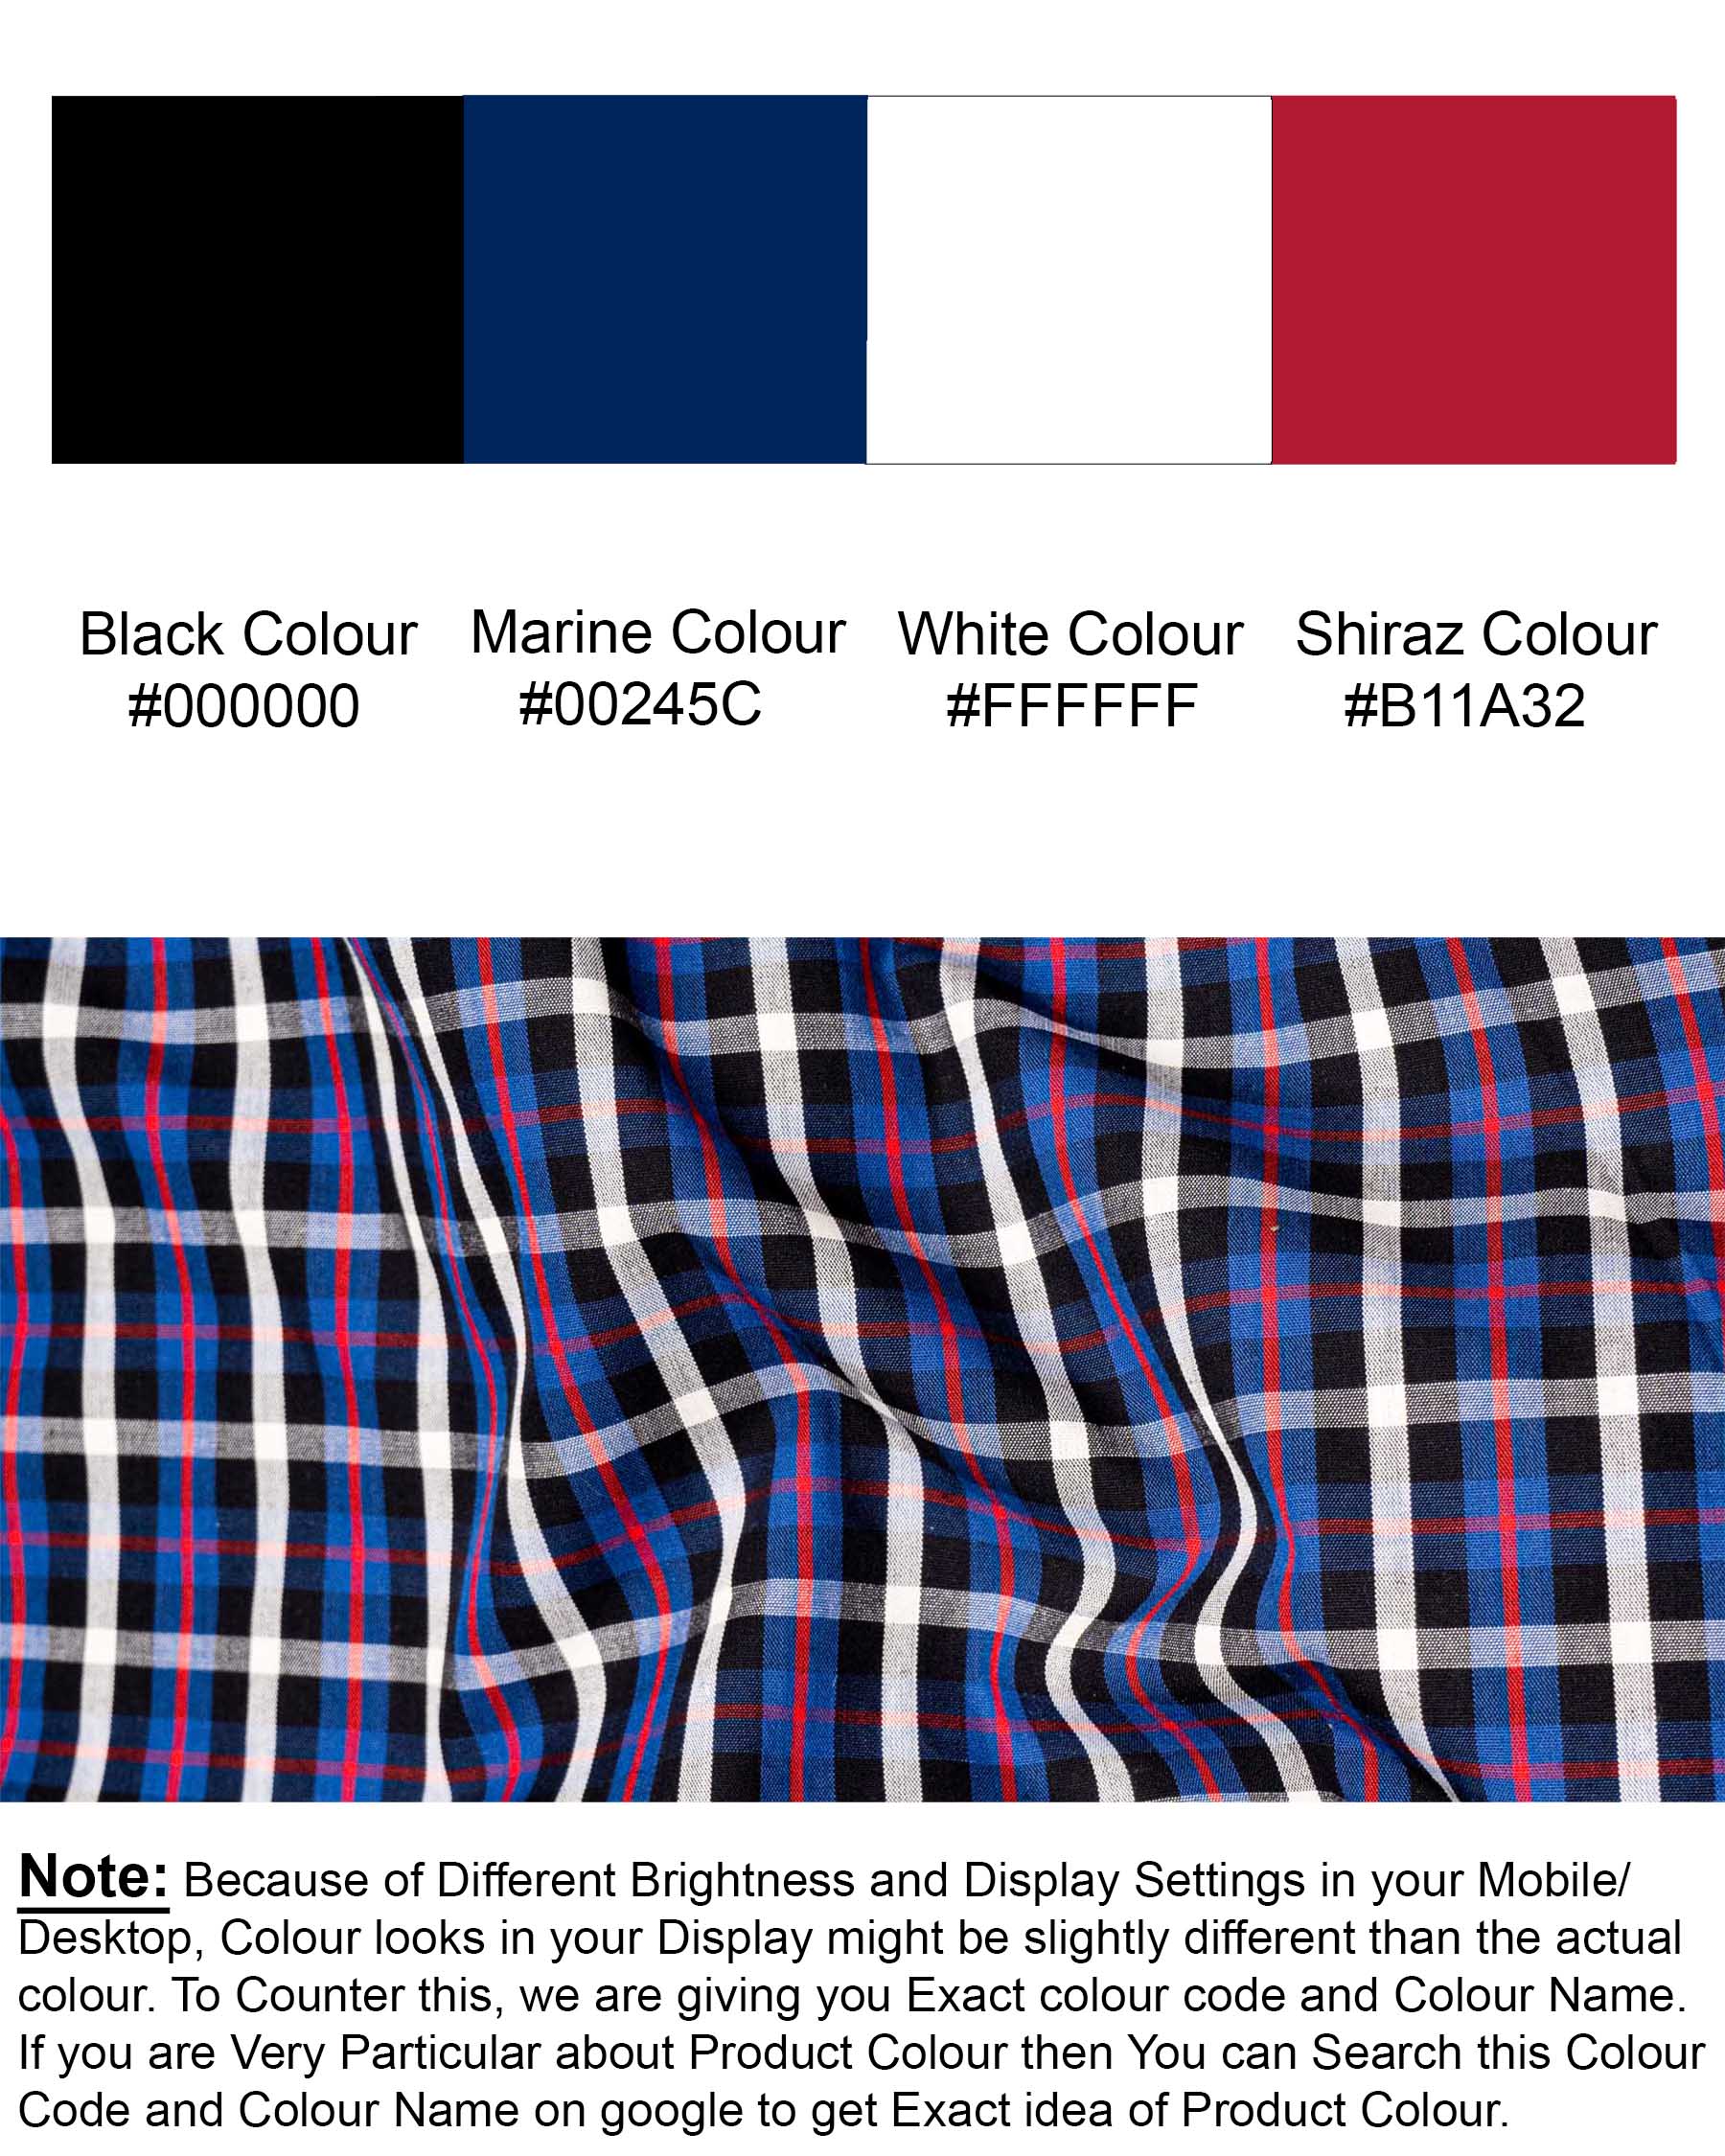 Jade Black with Plaid Premium Cotton Designer Shirt 7001-P361-38,7001-P361-38,7001-P361-39,7001-P361-39,7001-P361-40,7001-P361-40,7001-P361-42,7001-P361-42,7001-P361-44,7001-P361-44,7001-P361-46,7001-P361-46,7001-P361-48,7001-P361-48,7001-P361-50,7001-P361-50,7001-P361-52,7001-P361-52